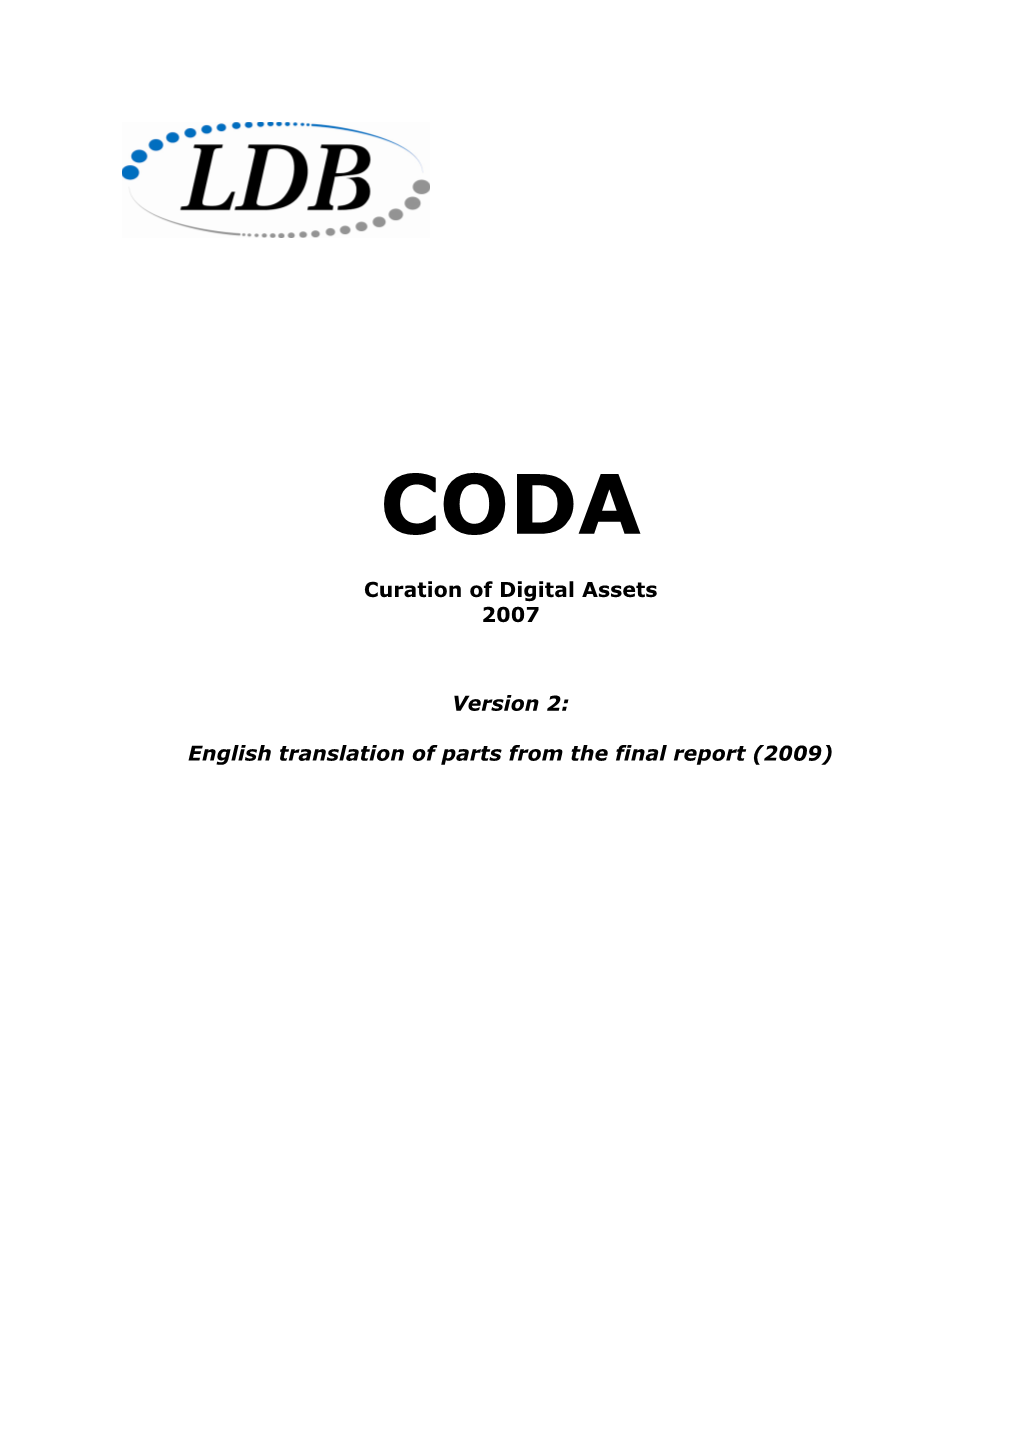 CODA Slutrapport